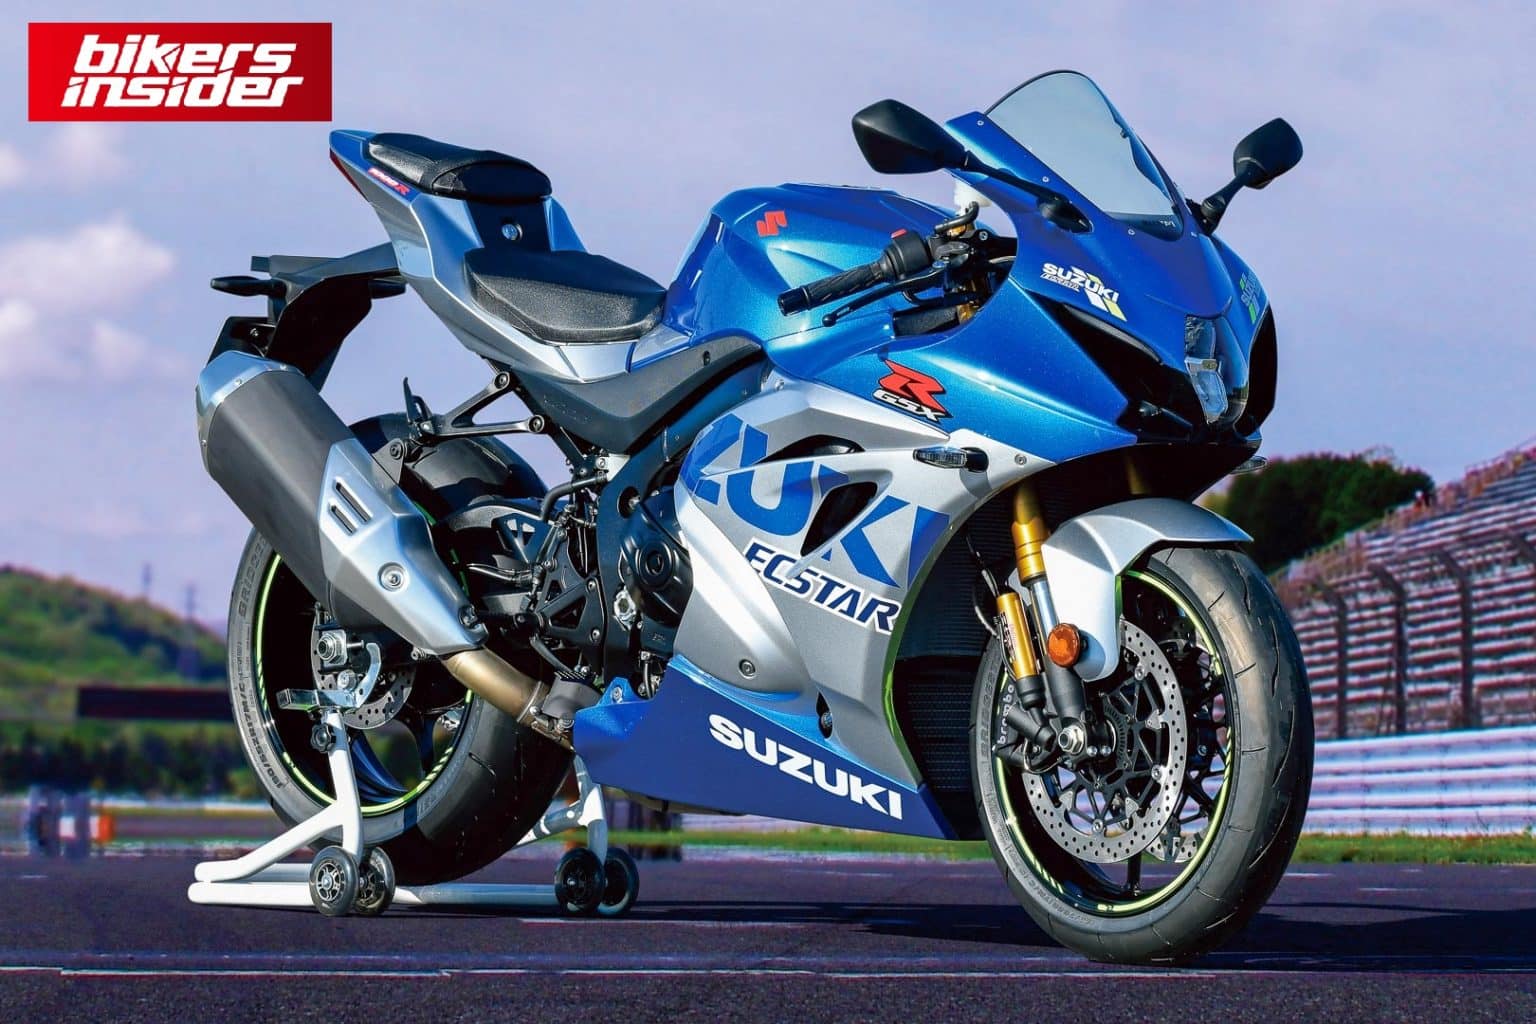 In 2023, Suzuki may discontinue the GSXR1000 in Europe. Bikers Insider